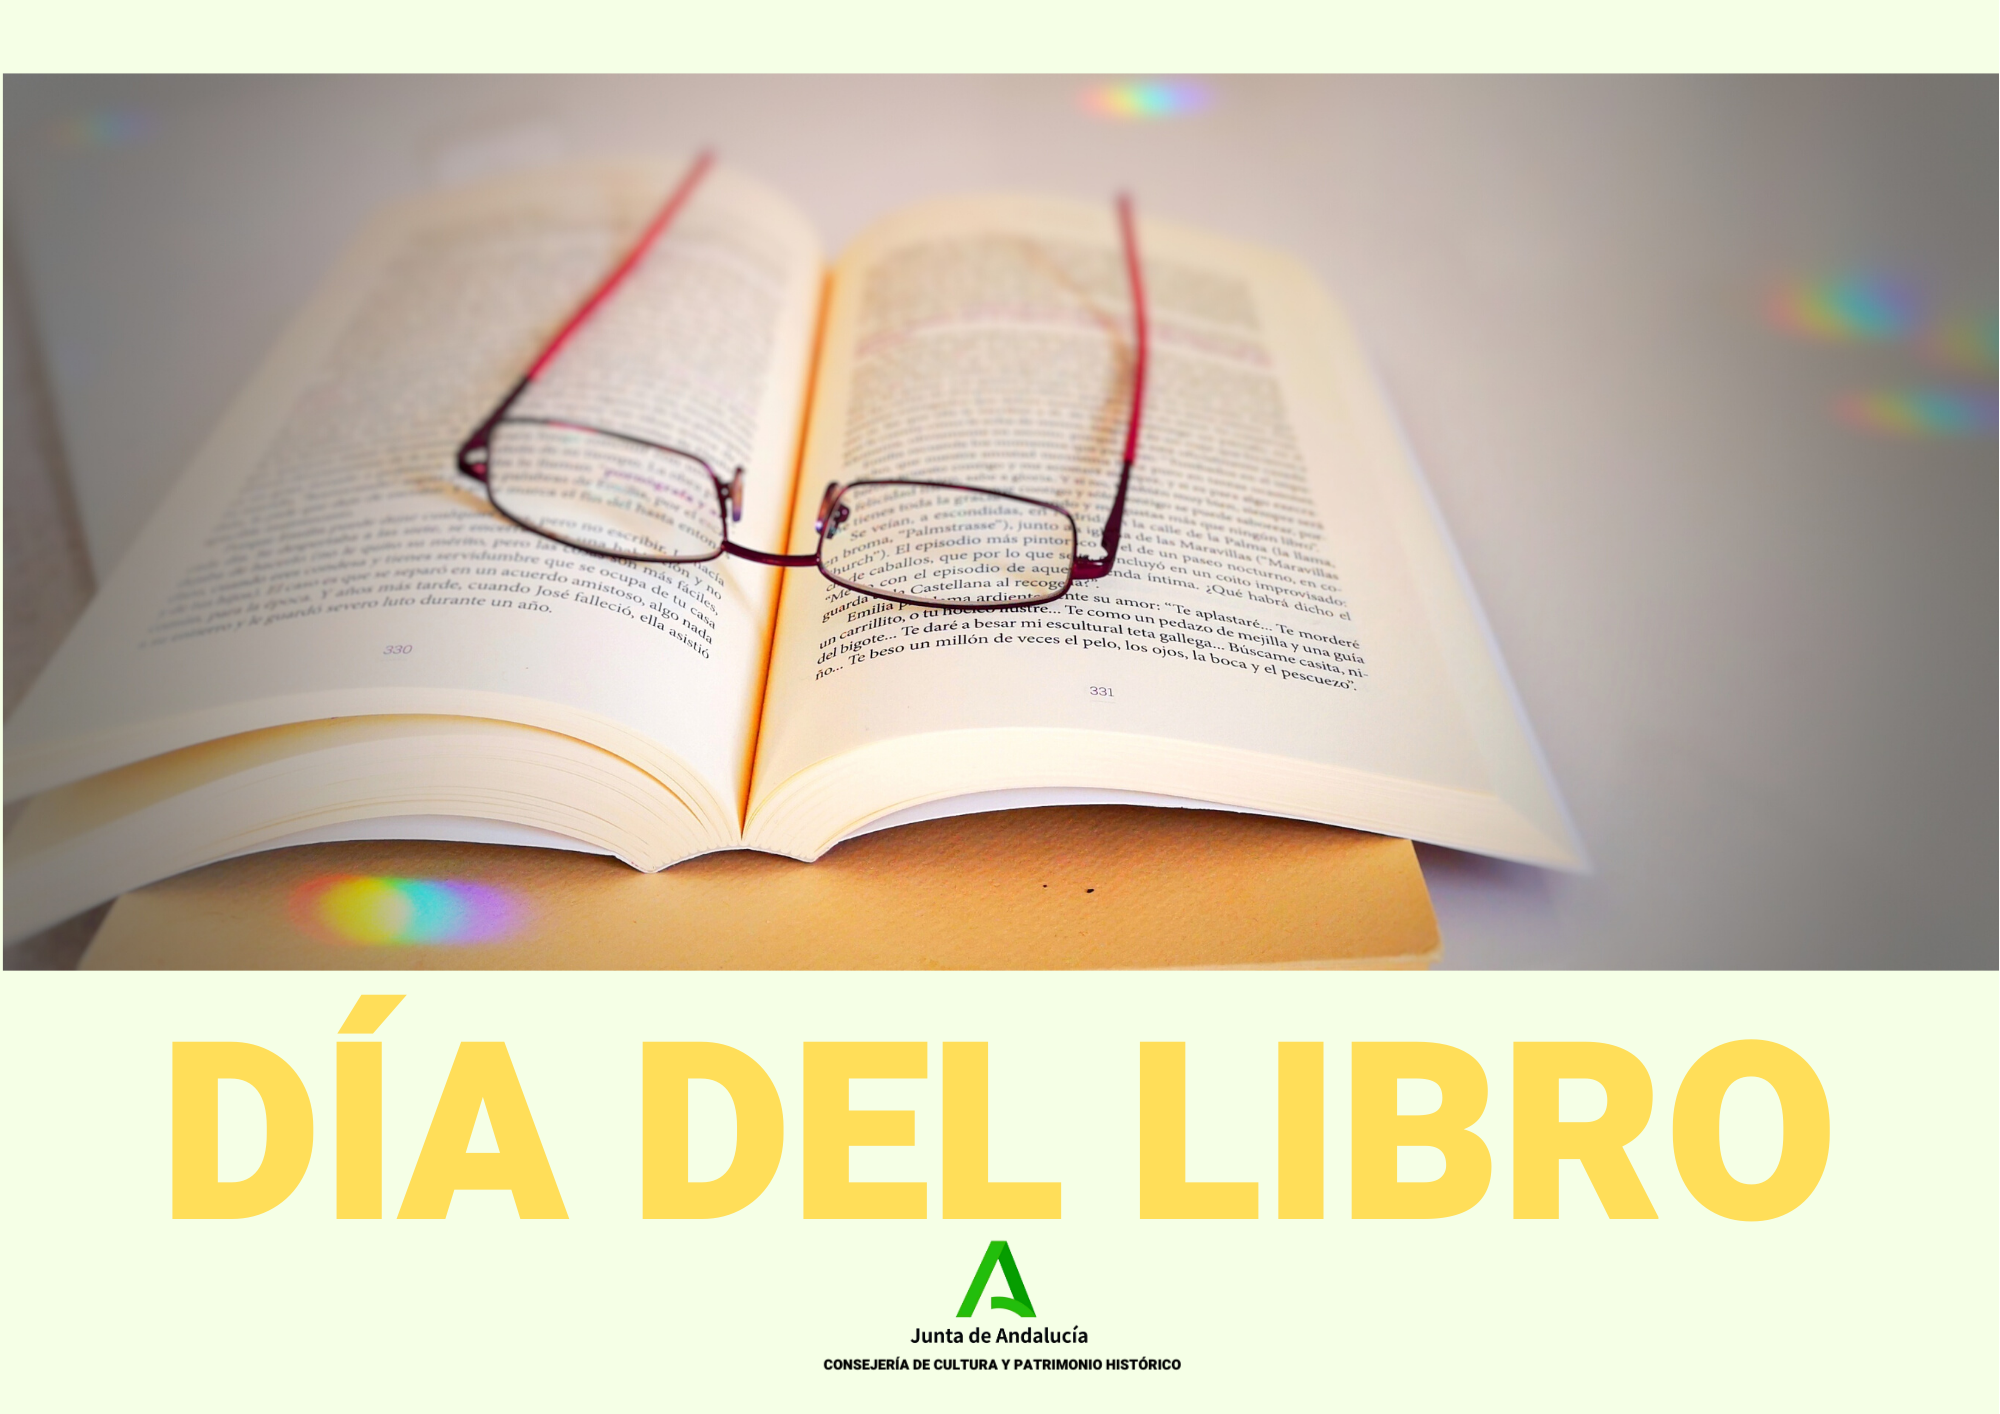 Junta De Andalucia Dia Del Libro 2020 Programacion De Actividades En Las Bibliotecas Provinciales De Andalucia